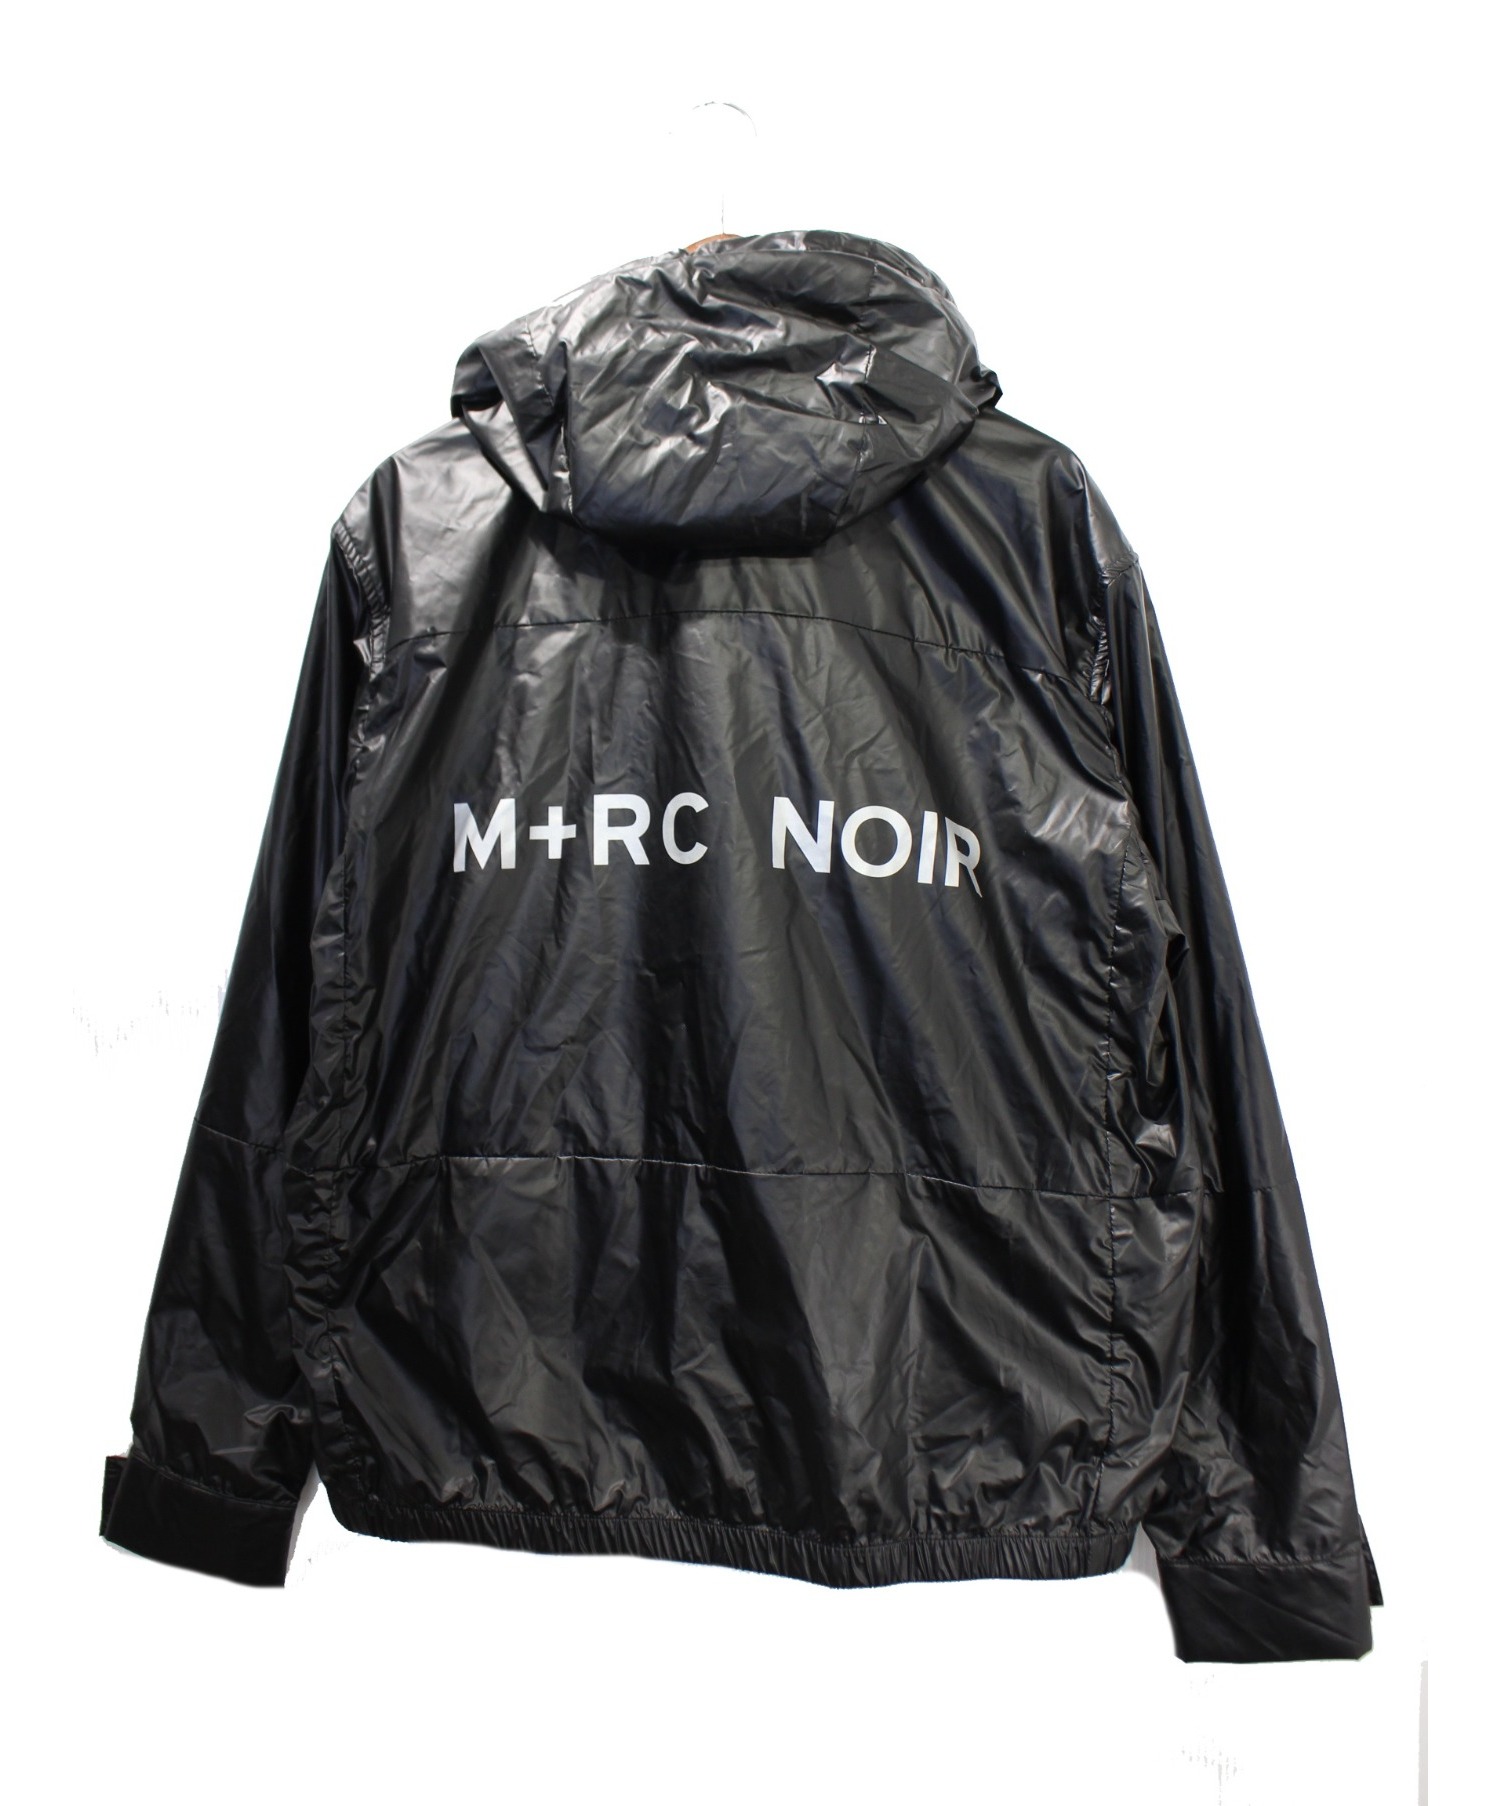 M+RC NOIR (マルシェノア) アノラックパーカー ブラック サイズ:M